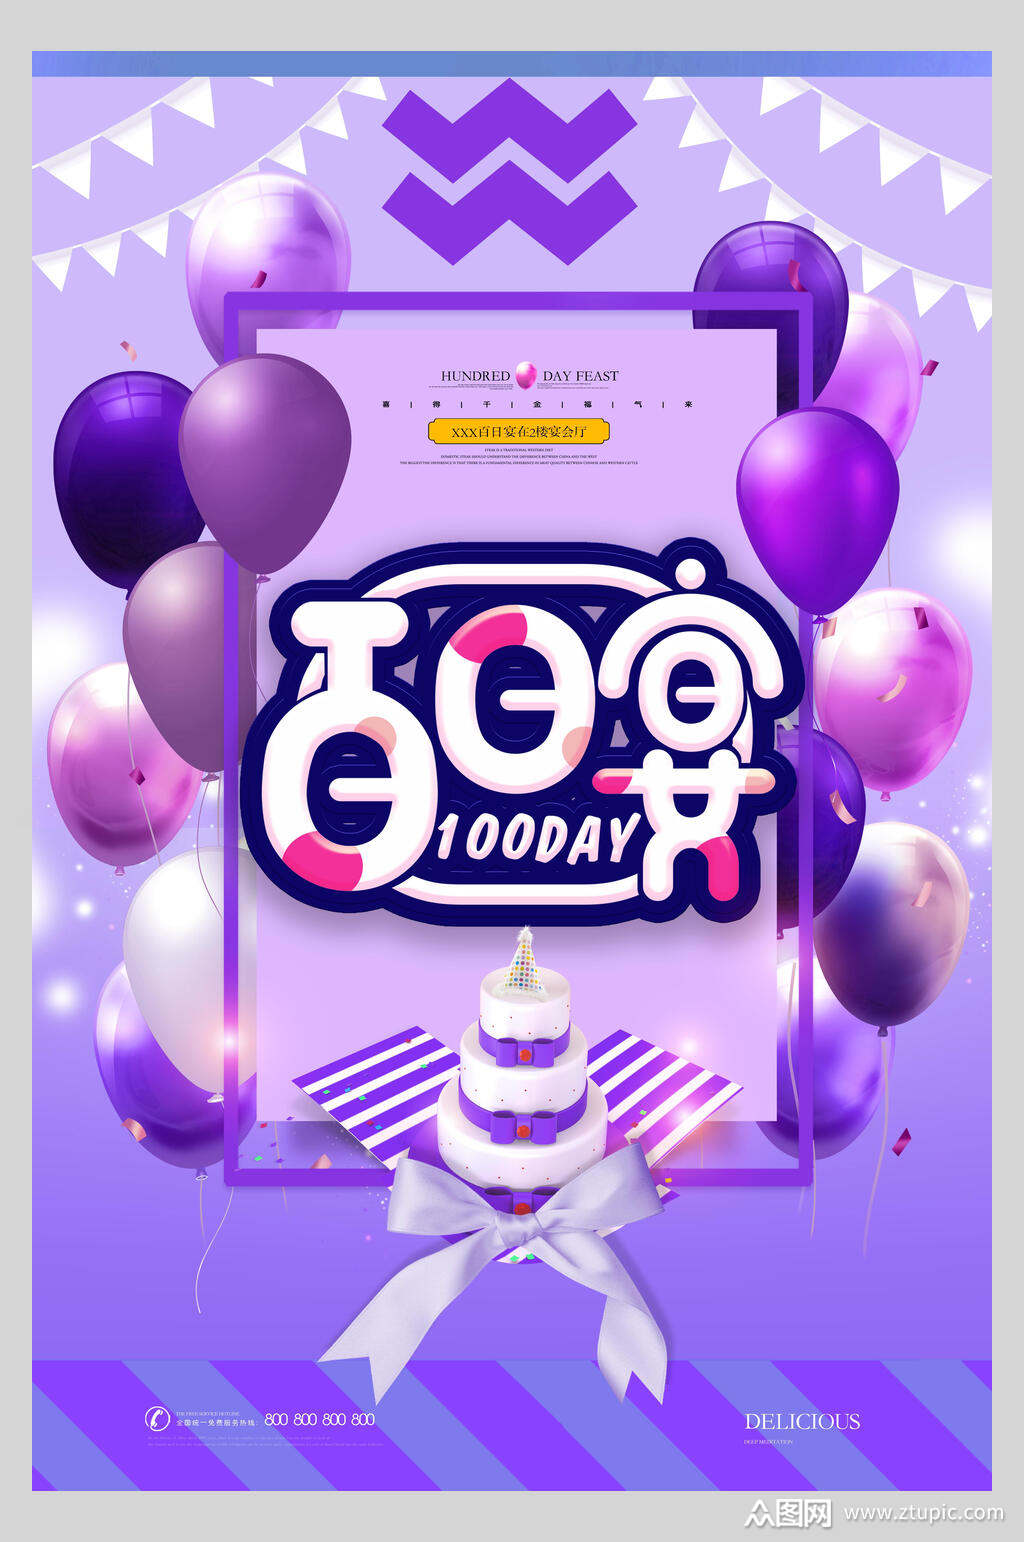 紫色百日宴生日蛋糕生日快乐庆祝海报素材免费下载,本作品是由小雪